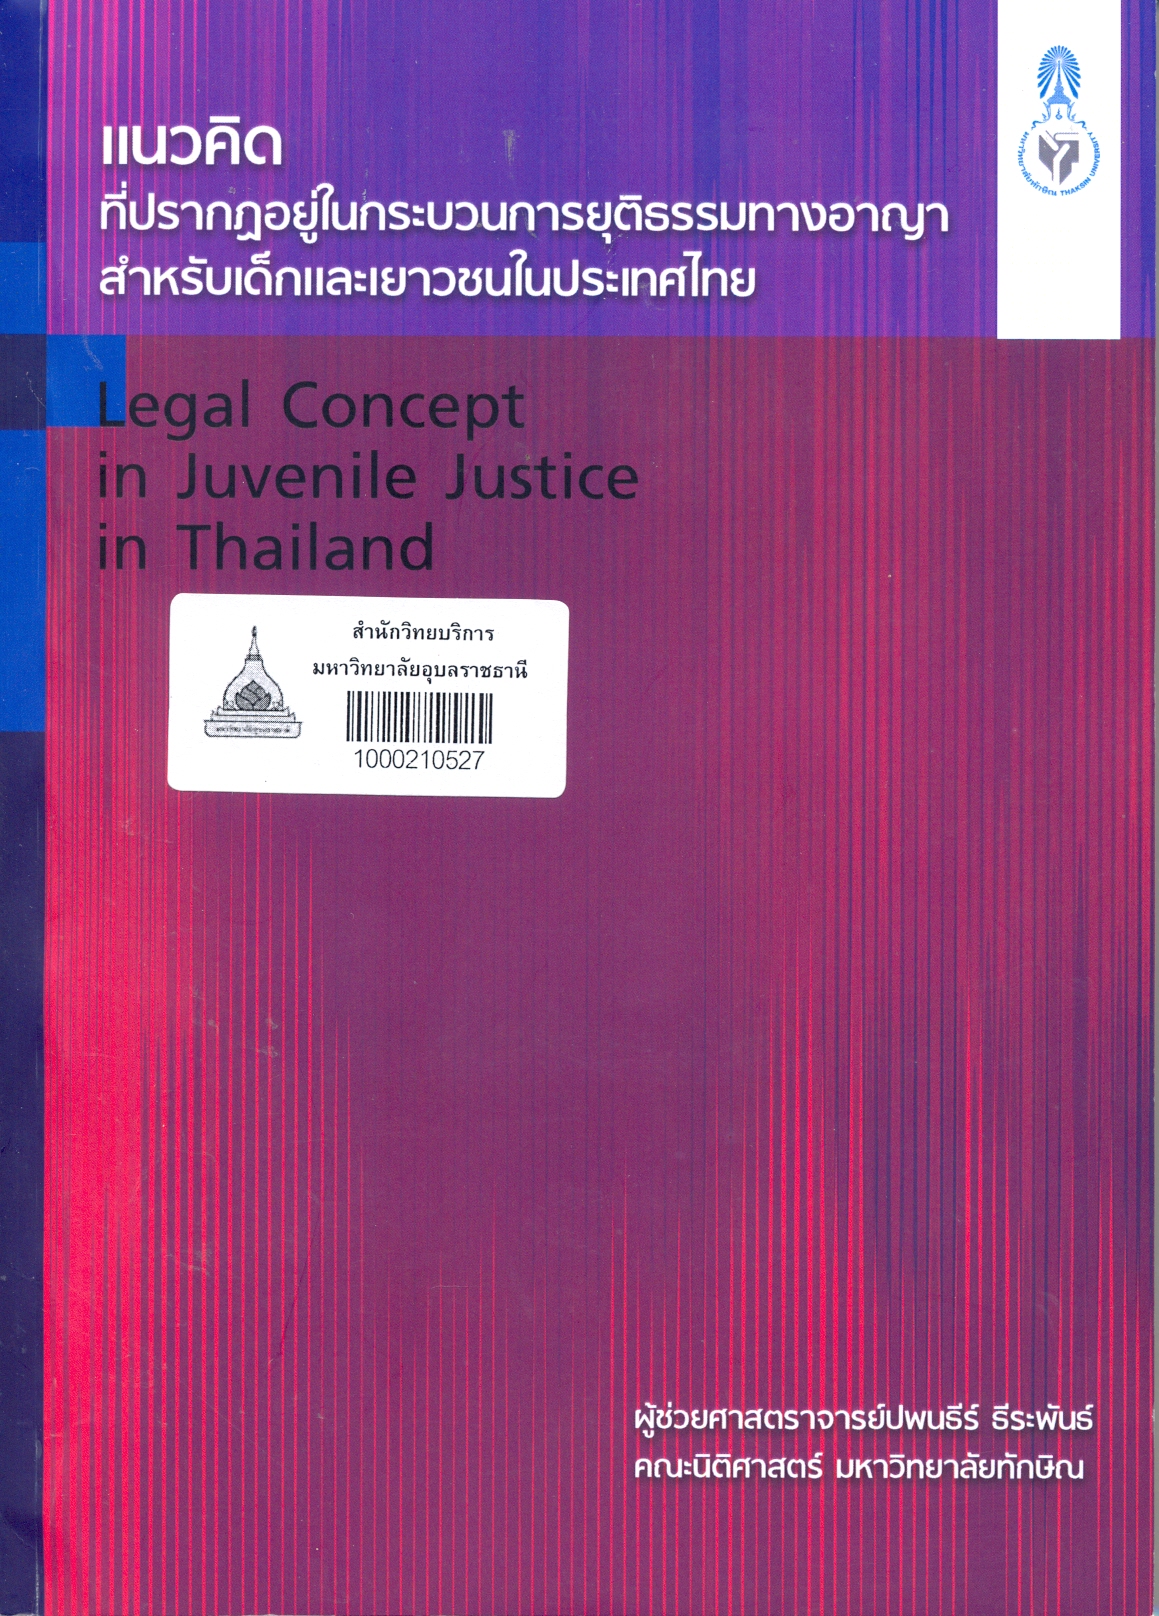 แนวคิดที่ปรากฏอยู่ในกระบวนการยุติธรรมทางอาญาสำหรับเด็กและเยาวชนในประเทศไทย